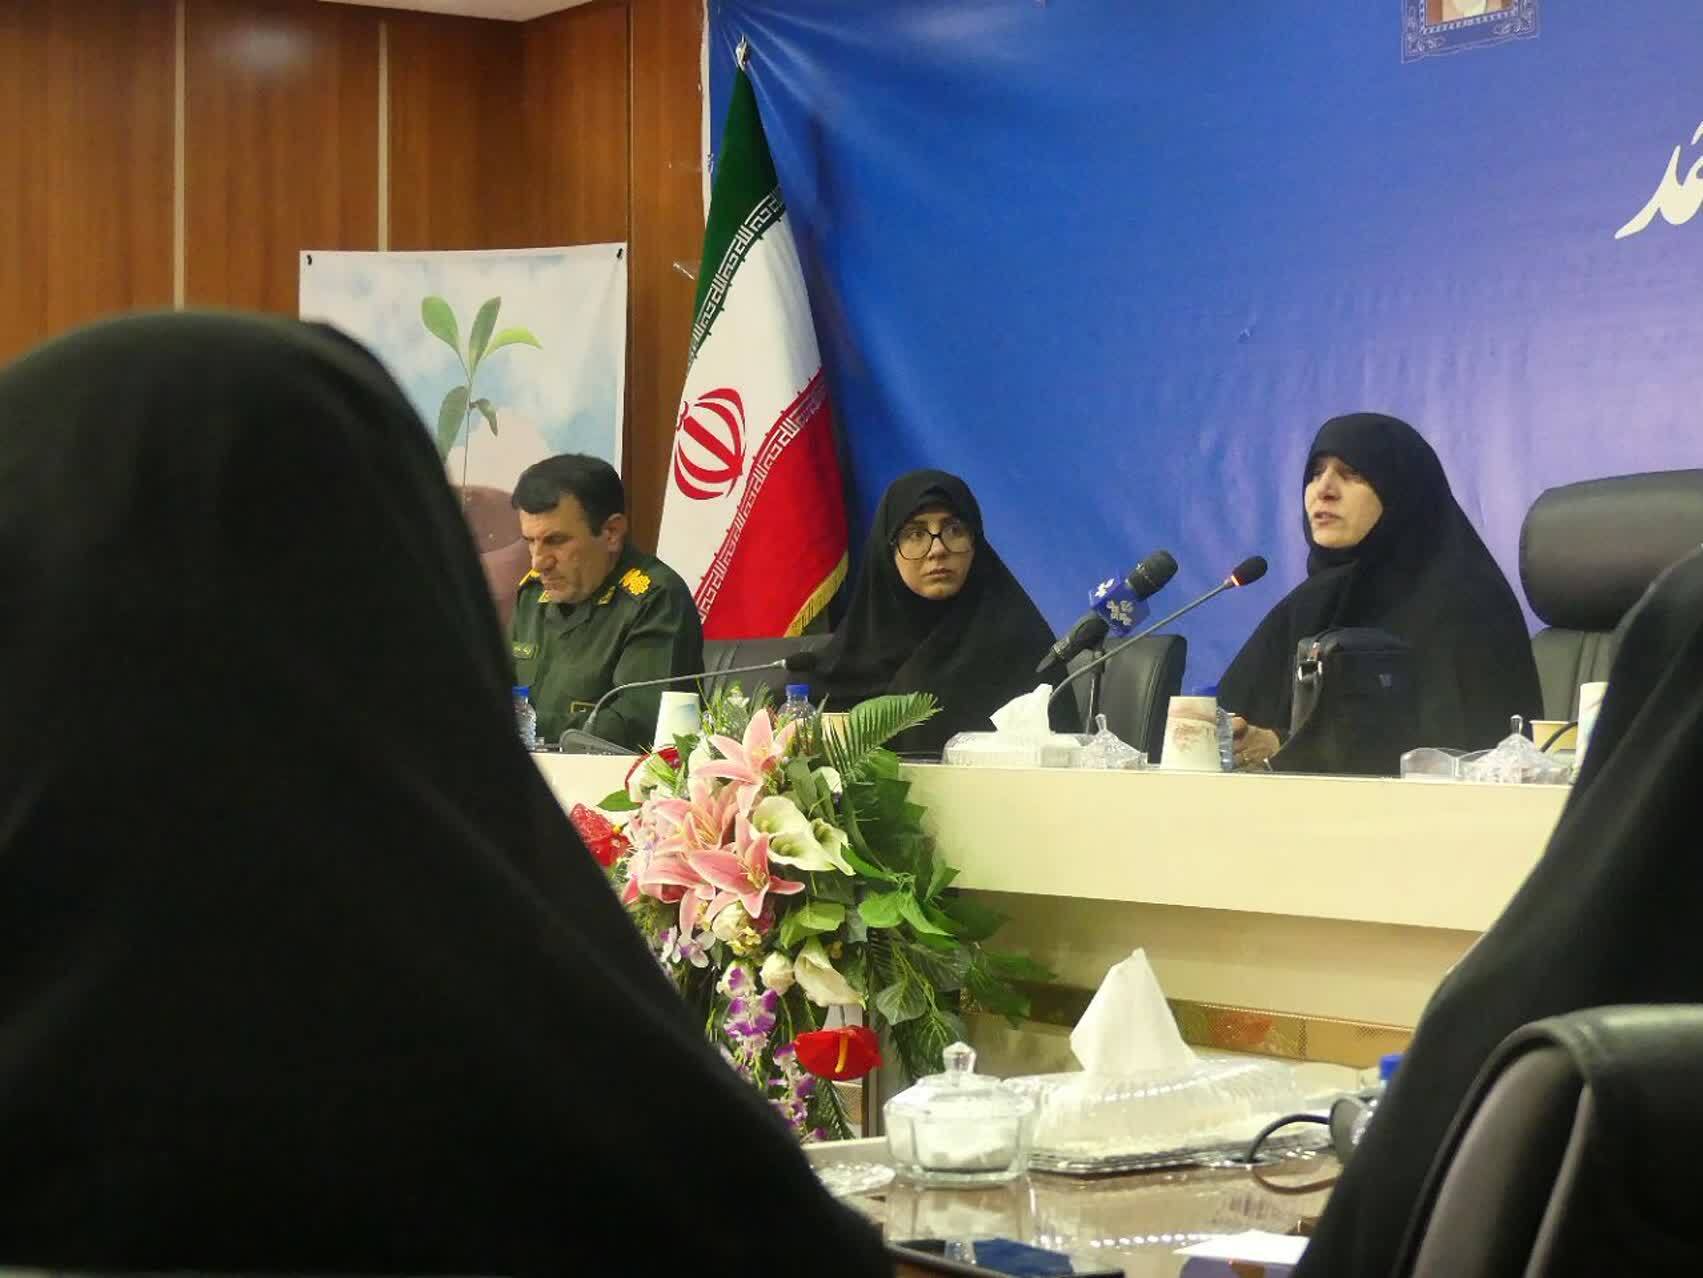 تربیت نسل تراز انقلاب اسلامی از رسالت های زنان است